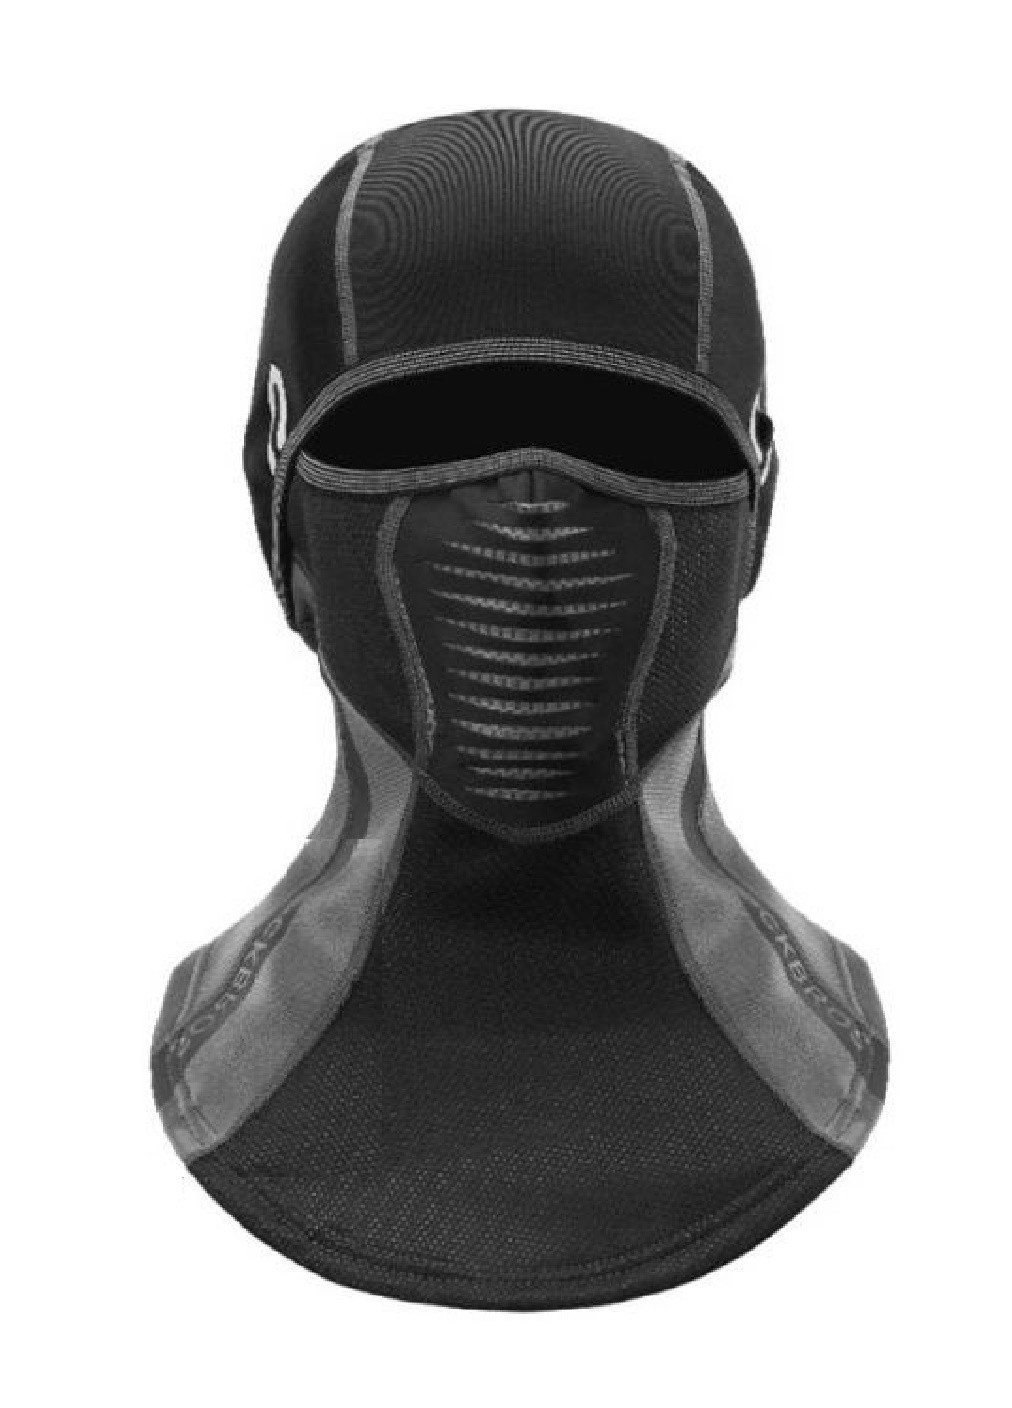 Francesco Marconi термо маска флисовая балаклава зимний бафф шарф подшлемник лыжная шапка (472822-prob) черная однотонный черный кэжуал флис производство - Китай